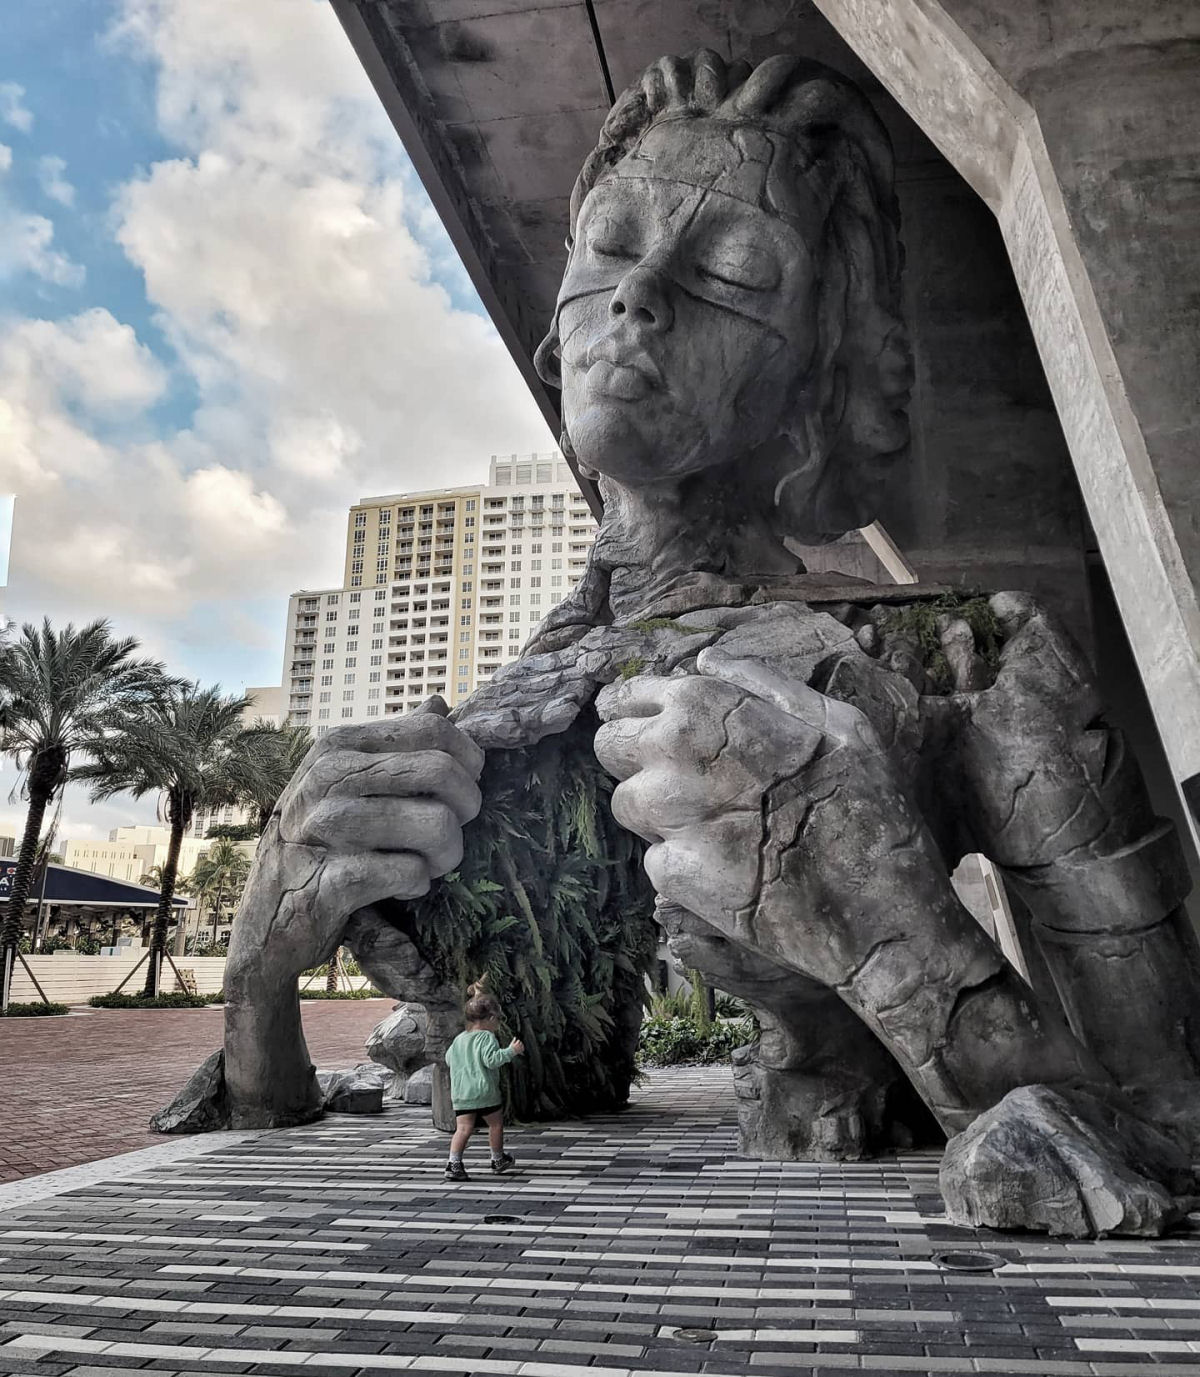 Monumental escultura feminina revela um túnel com cobertura de samambaias